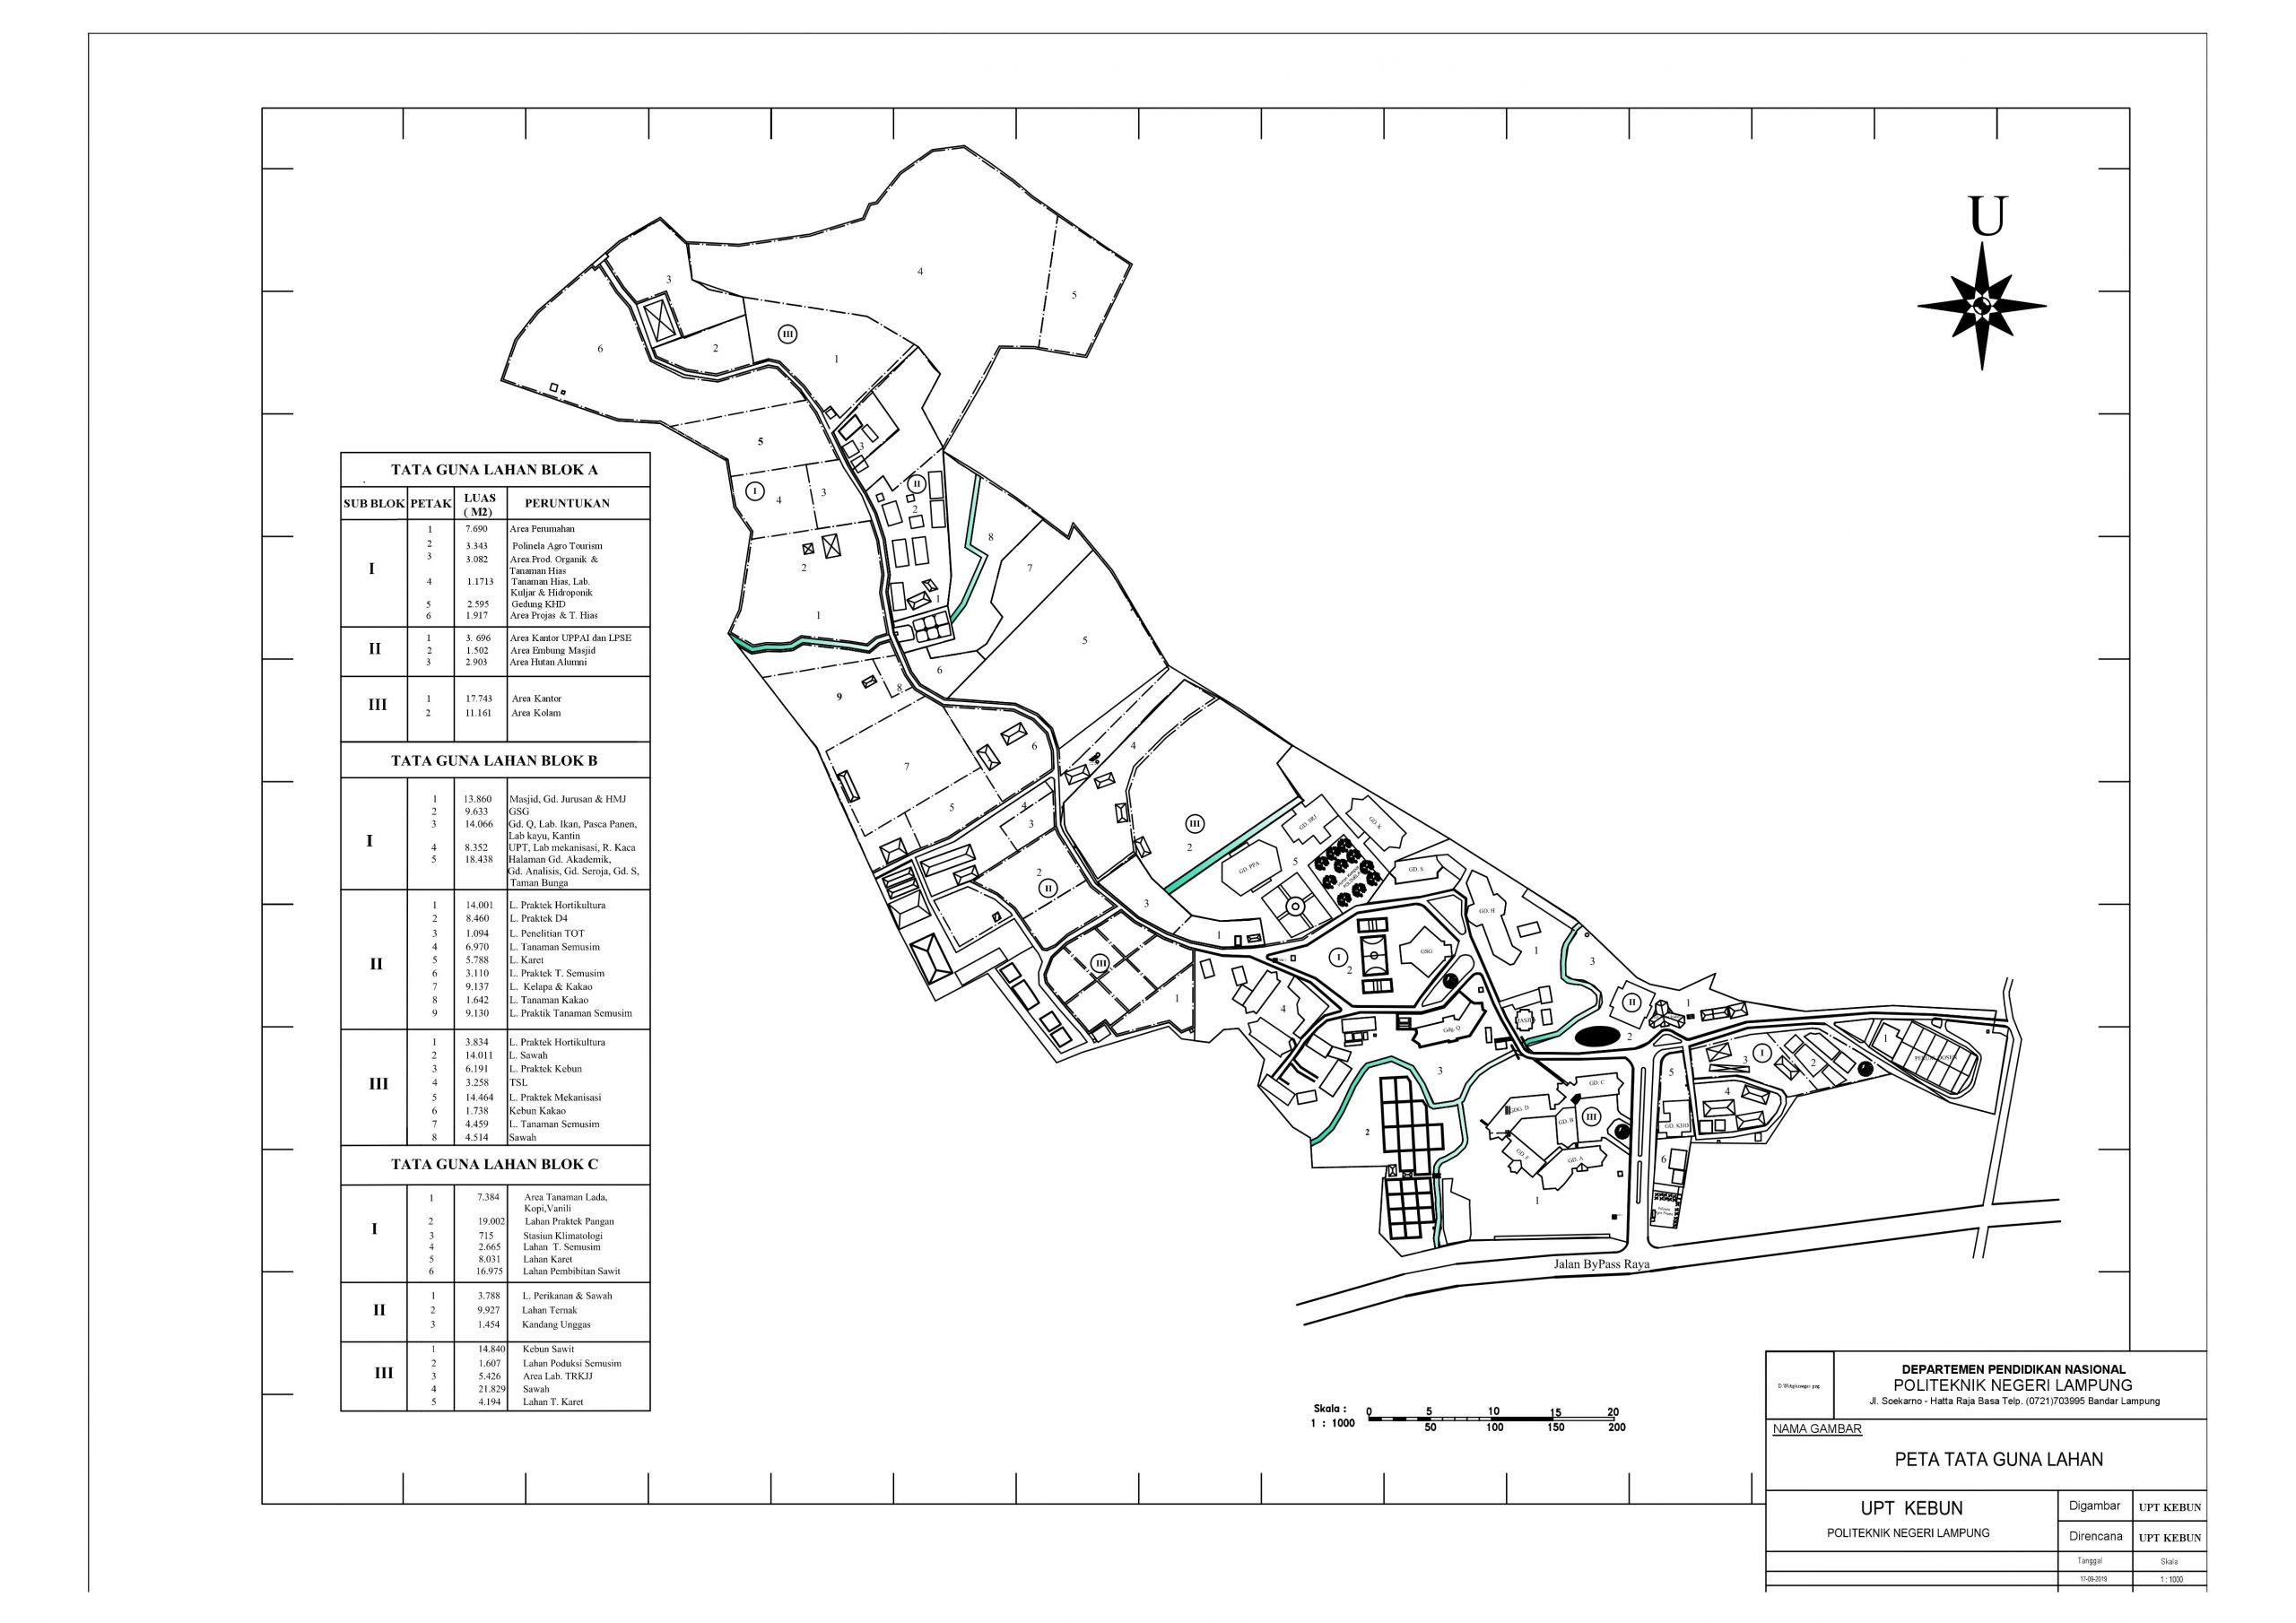 Peta Tata Guna Lahan Politeknik Negeri Lampung